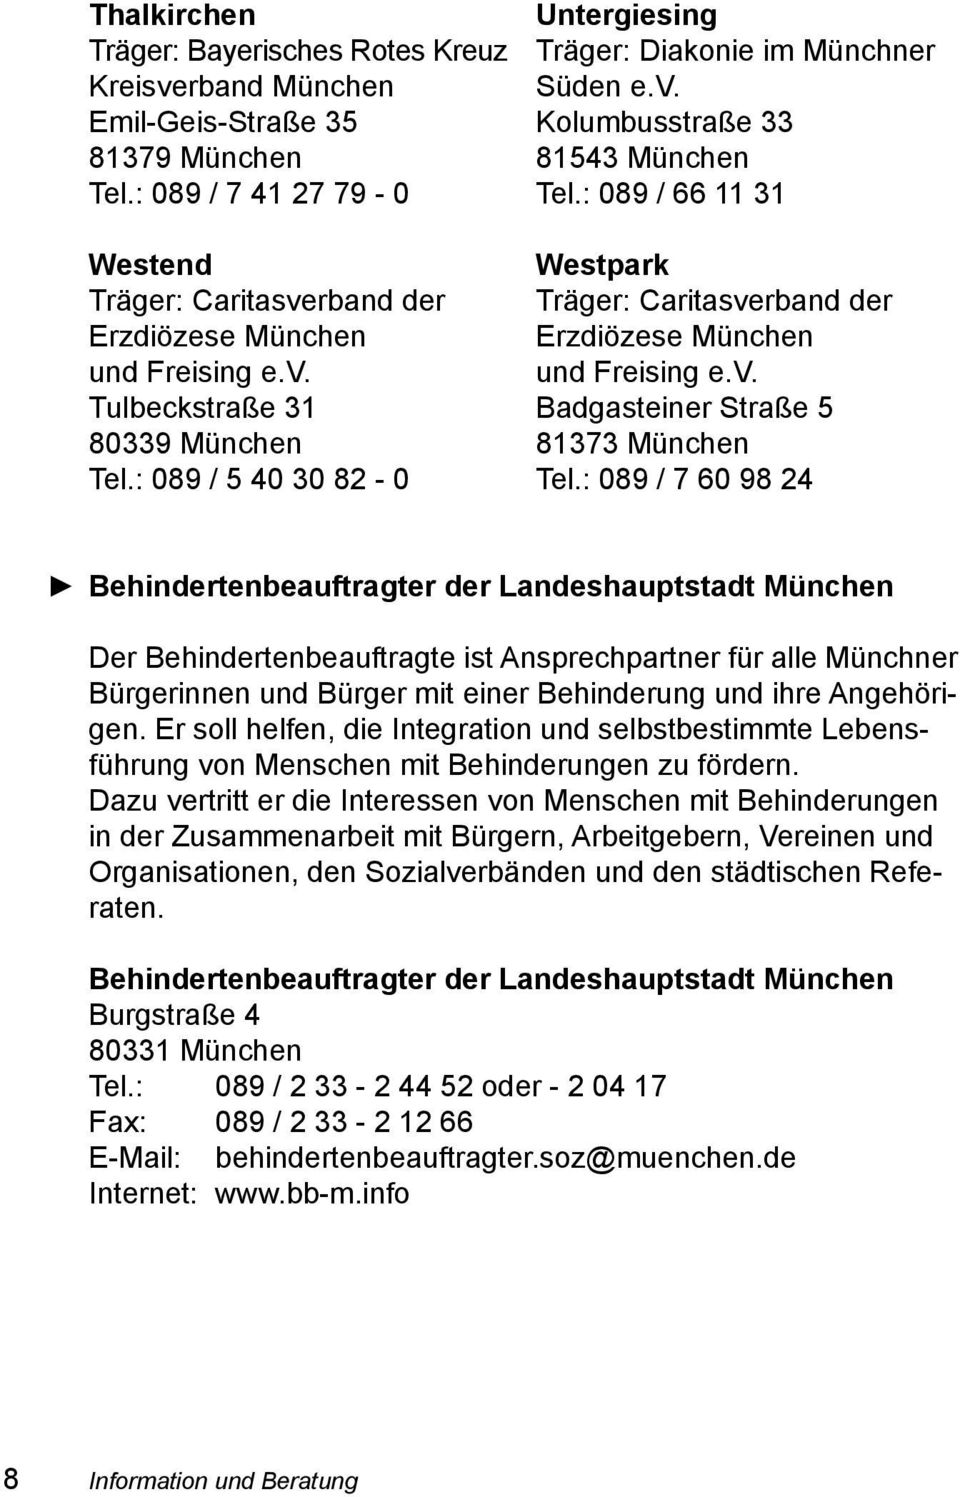 : 089 / 7 60 98 24 Behindertenbeauftragter der Landeshauptstadt München Der Behindertenbeauftragte ist Ansprechpartner für alle Münchner Bürgerinnen und Bürger mit einer Behinderung und ihre